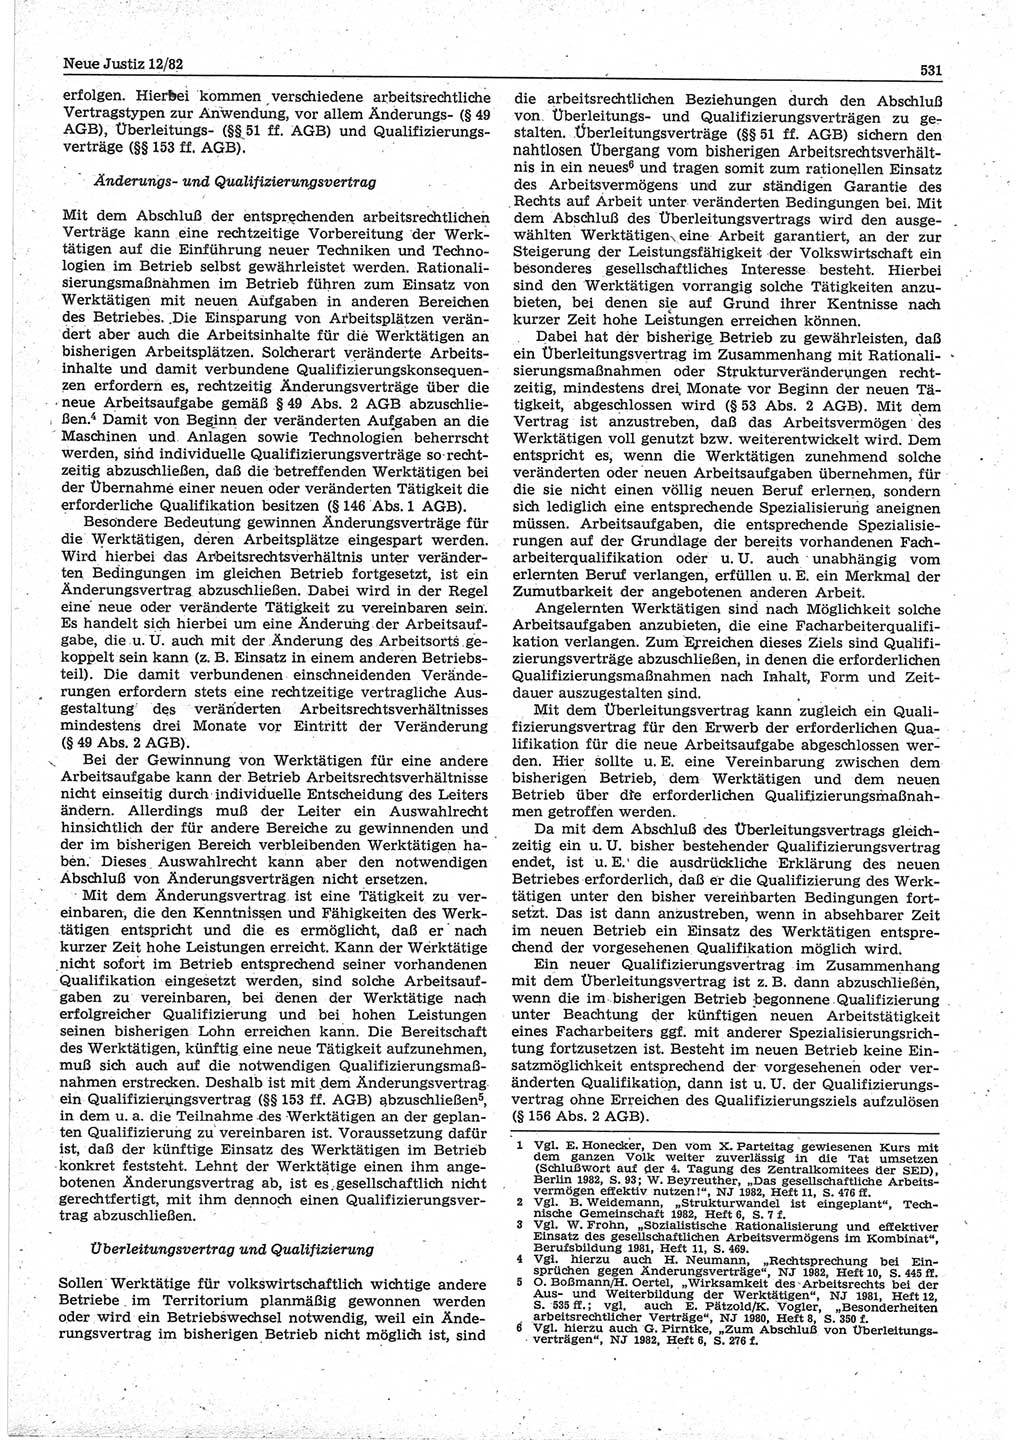 Neue Justiz (NJ), Zeitschrift für sozialistisches Recht und Gesetzlichkeit [Deutsche Demokratische Republik (DDR)], 36. Jahrgang 1982, Seite 531 (NJ DDR 1982, S. 531)